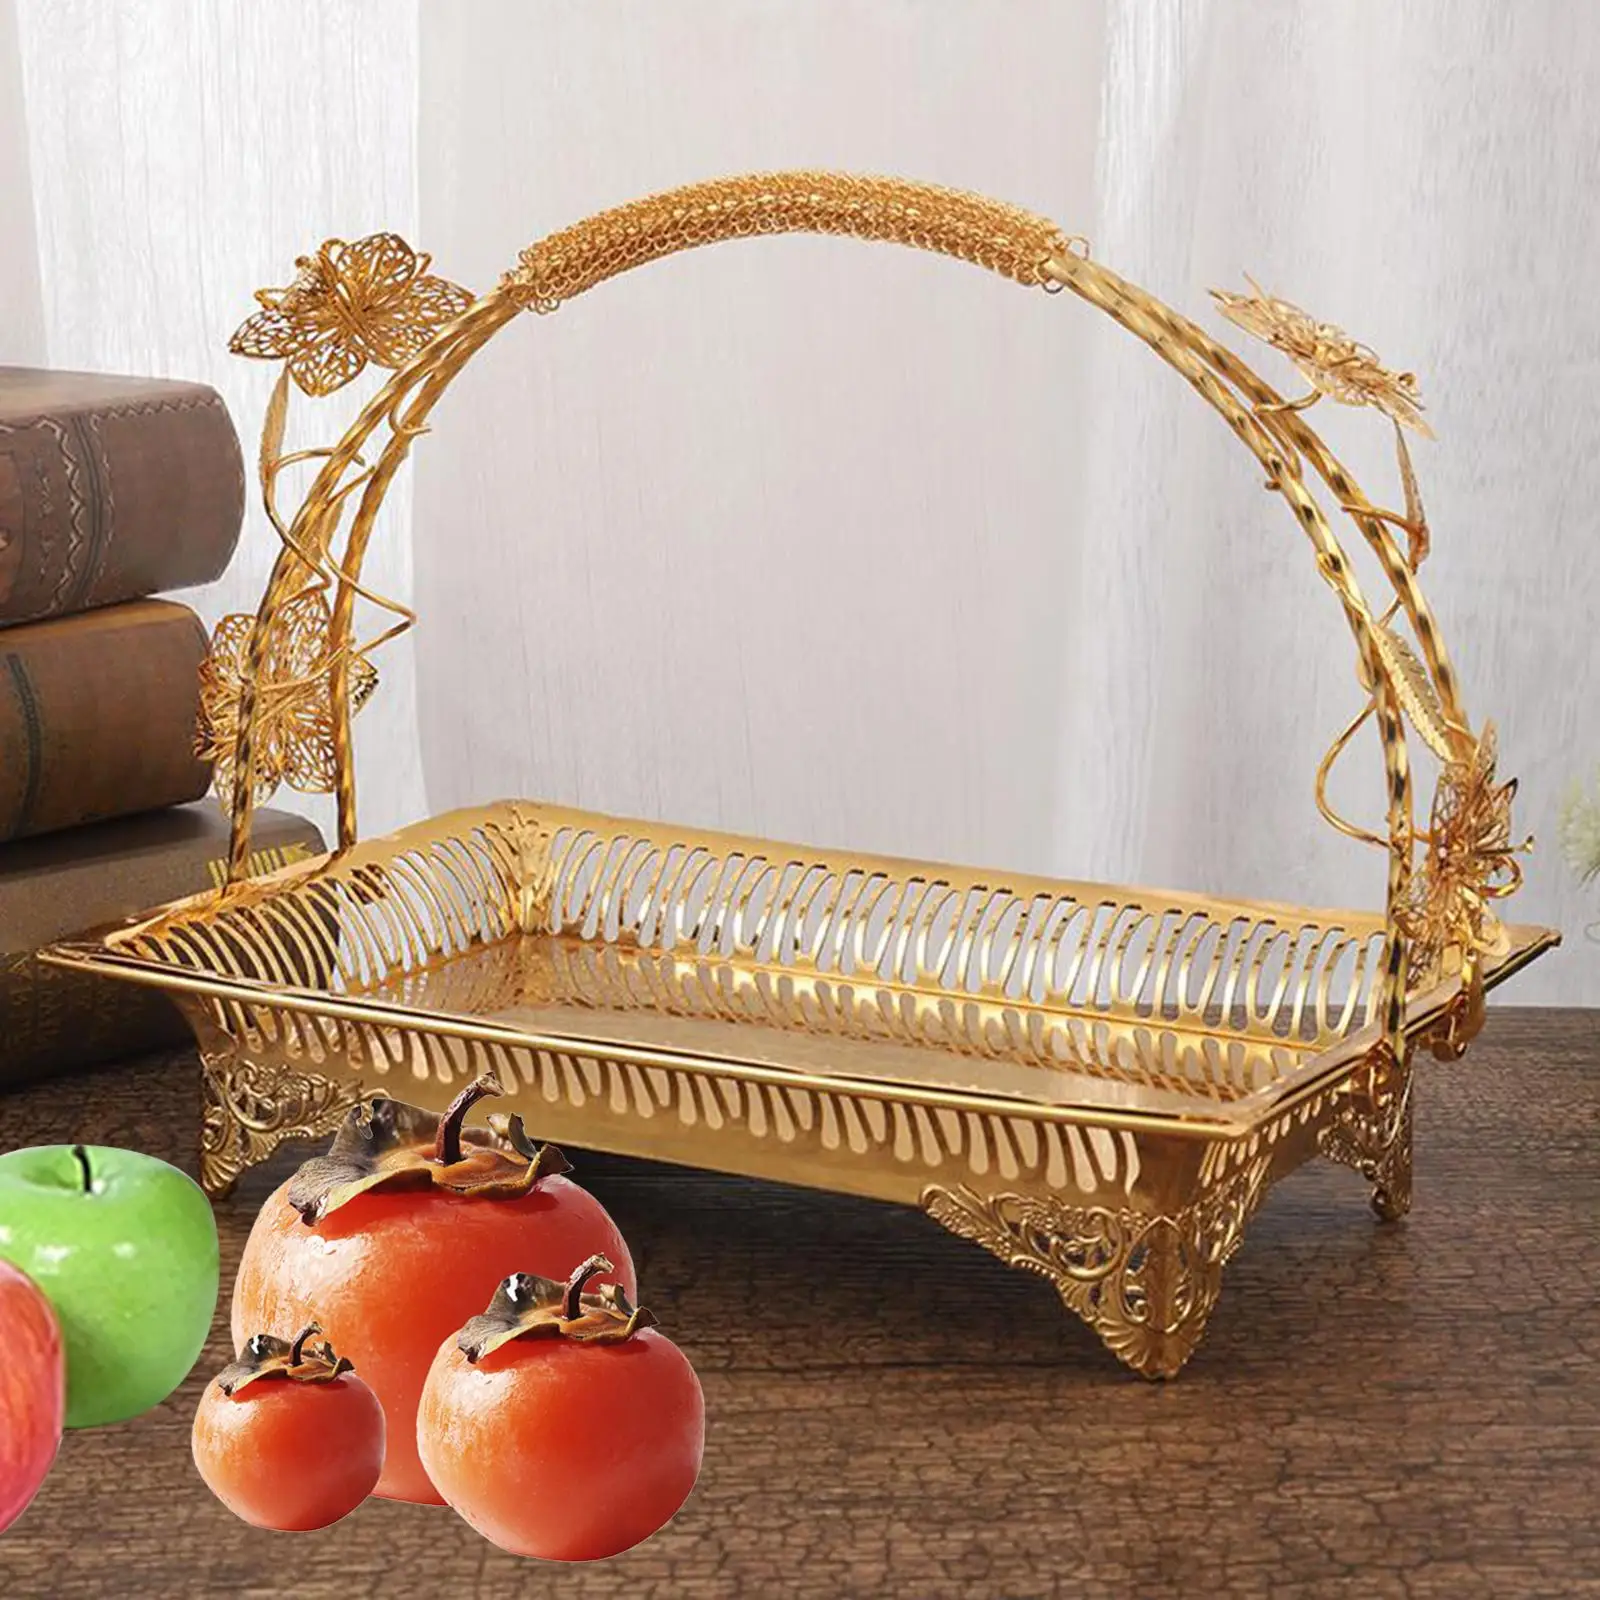 Fruit Serving Basket Vegetable Bowl Basket Party Decorative Tray Storage